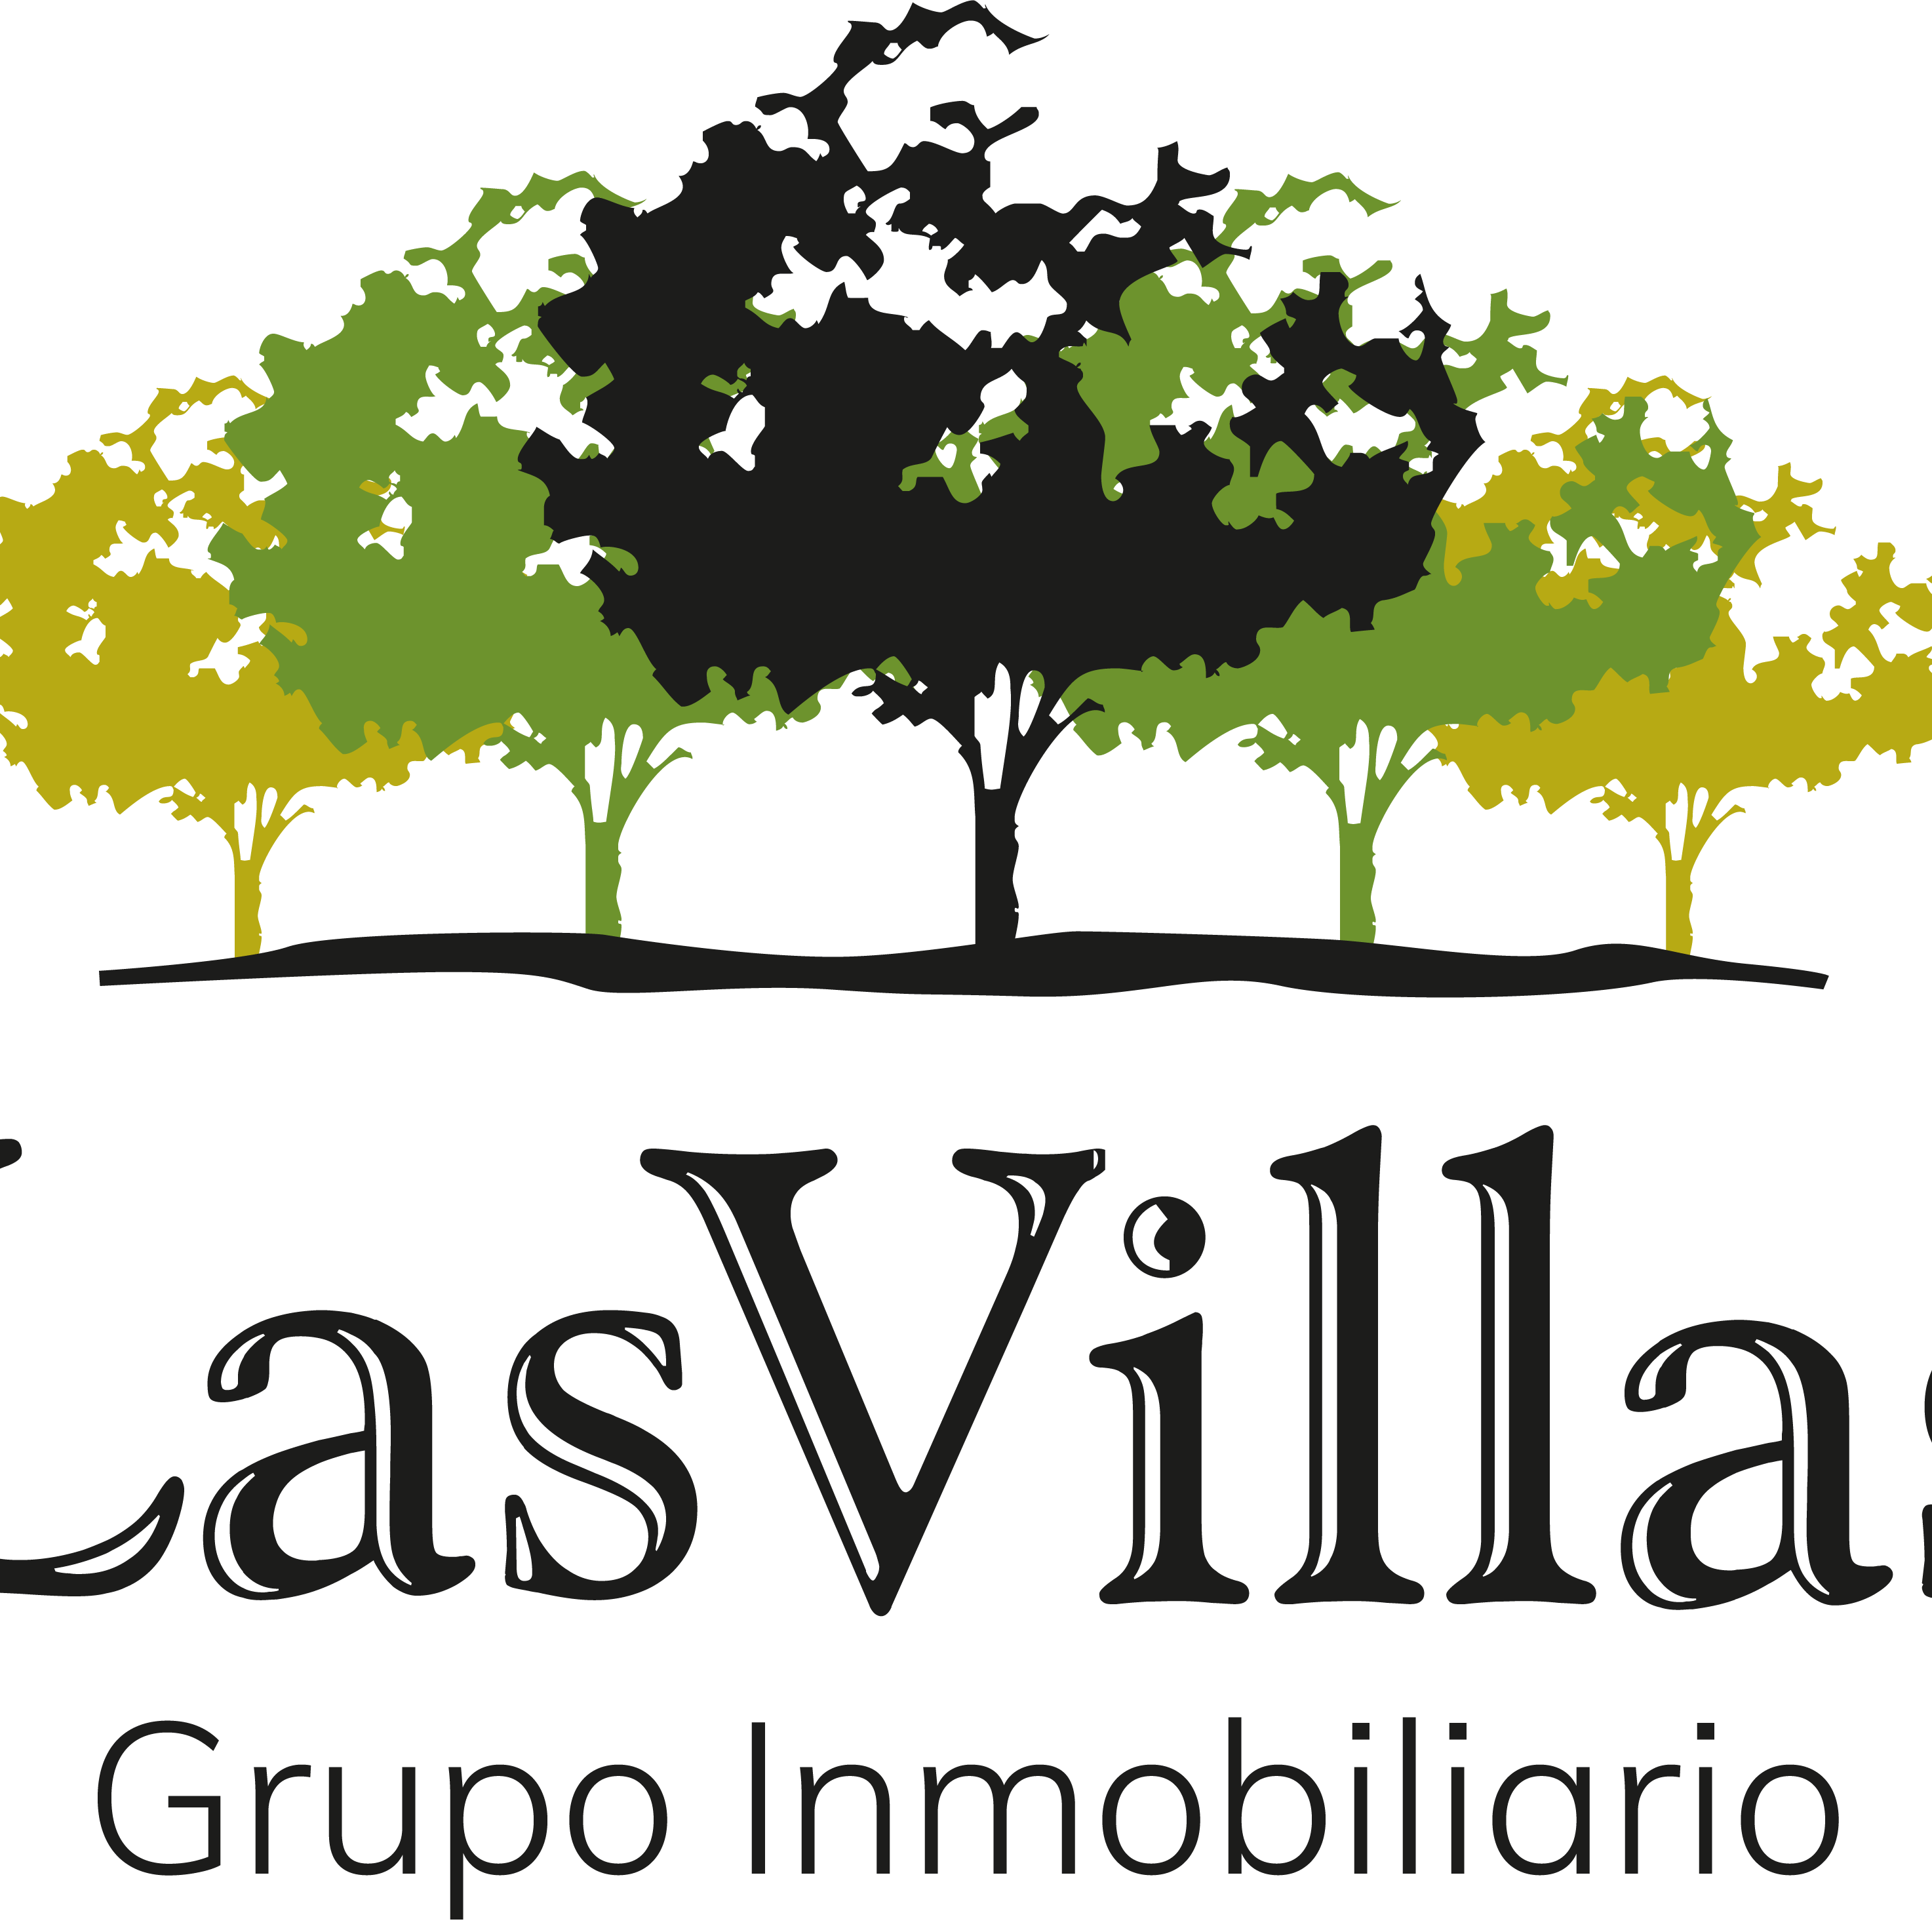 Logotipo Las Villas Grupo Inmobiliario